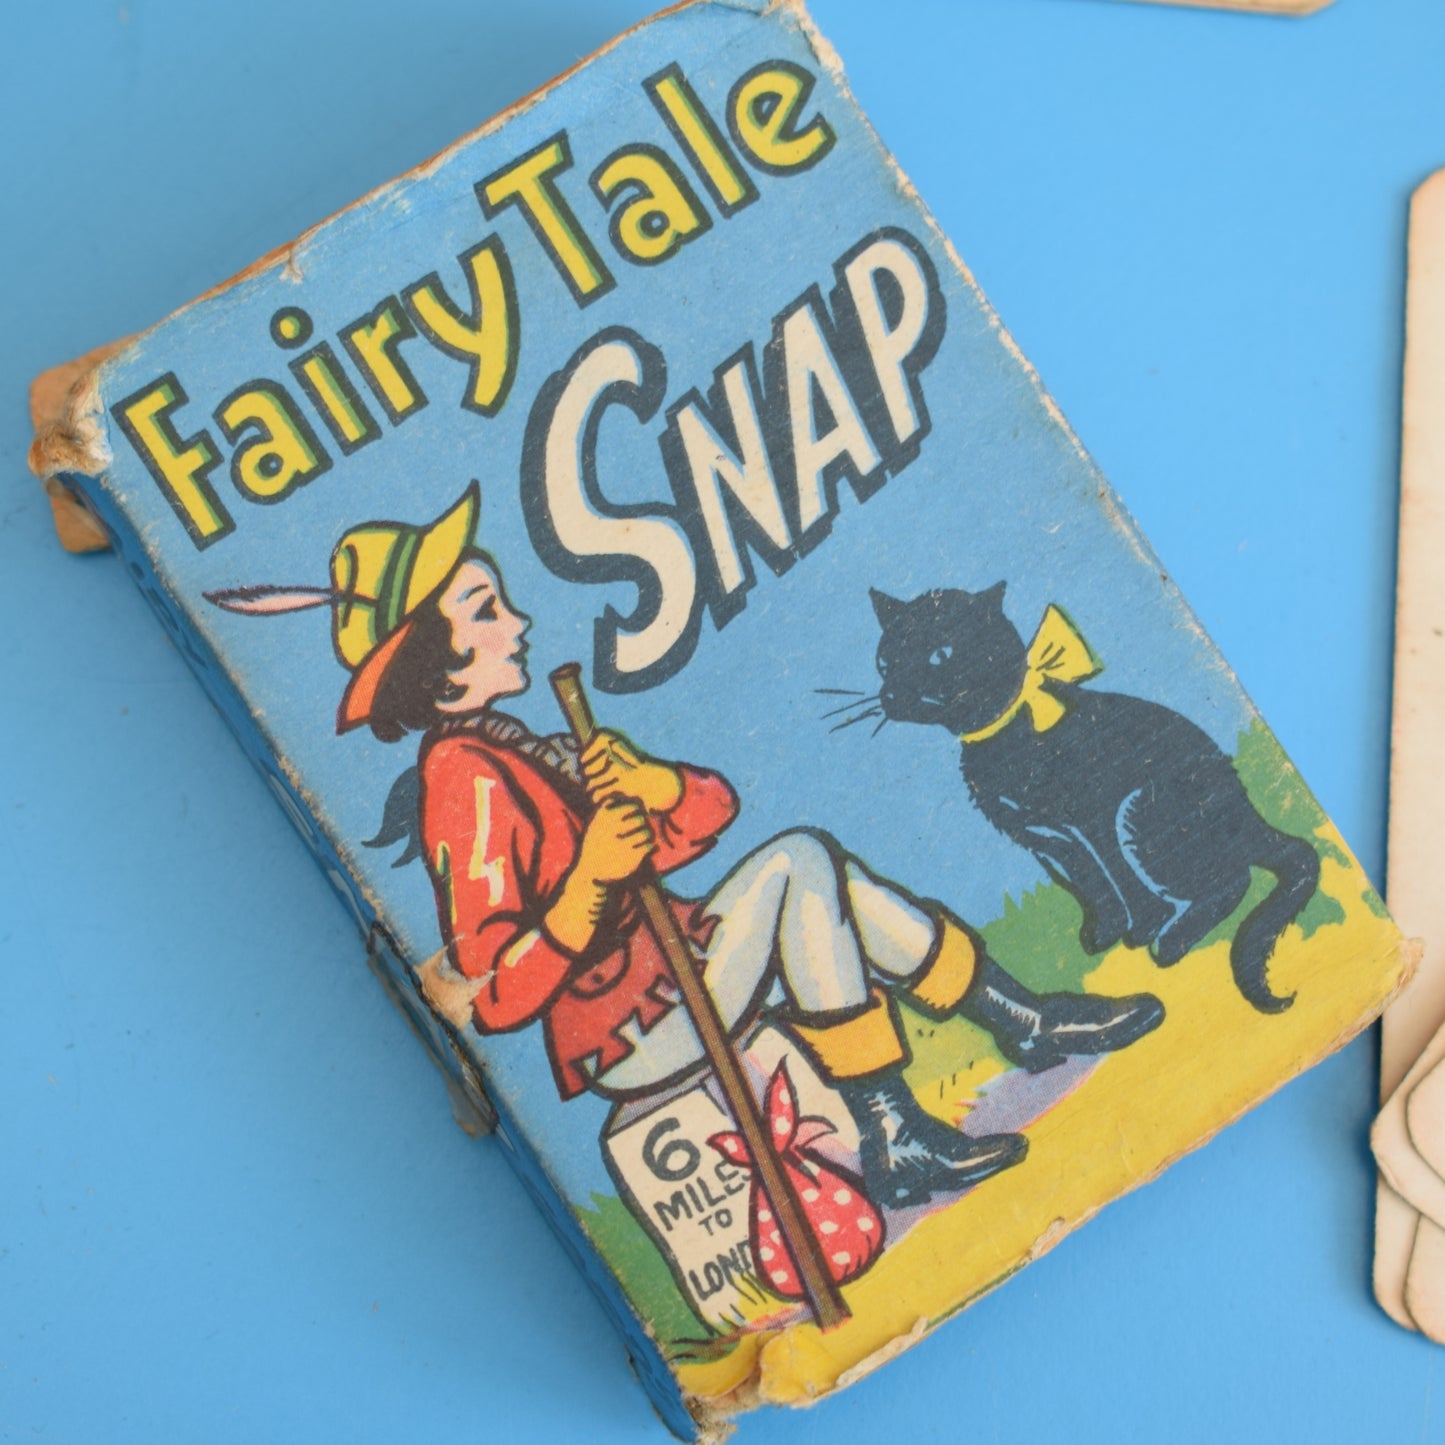 Vintage 1970s Fairytale Snap